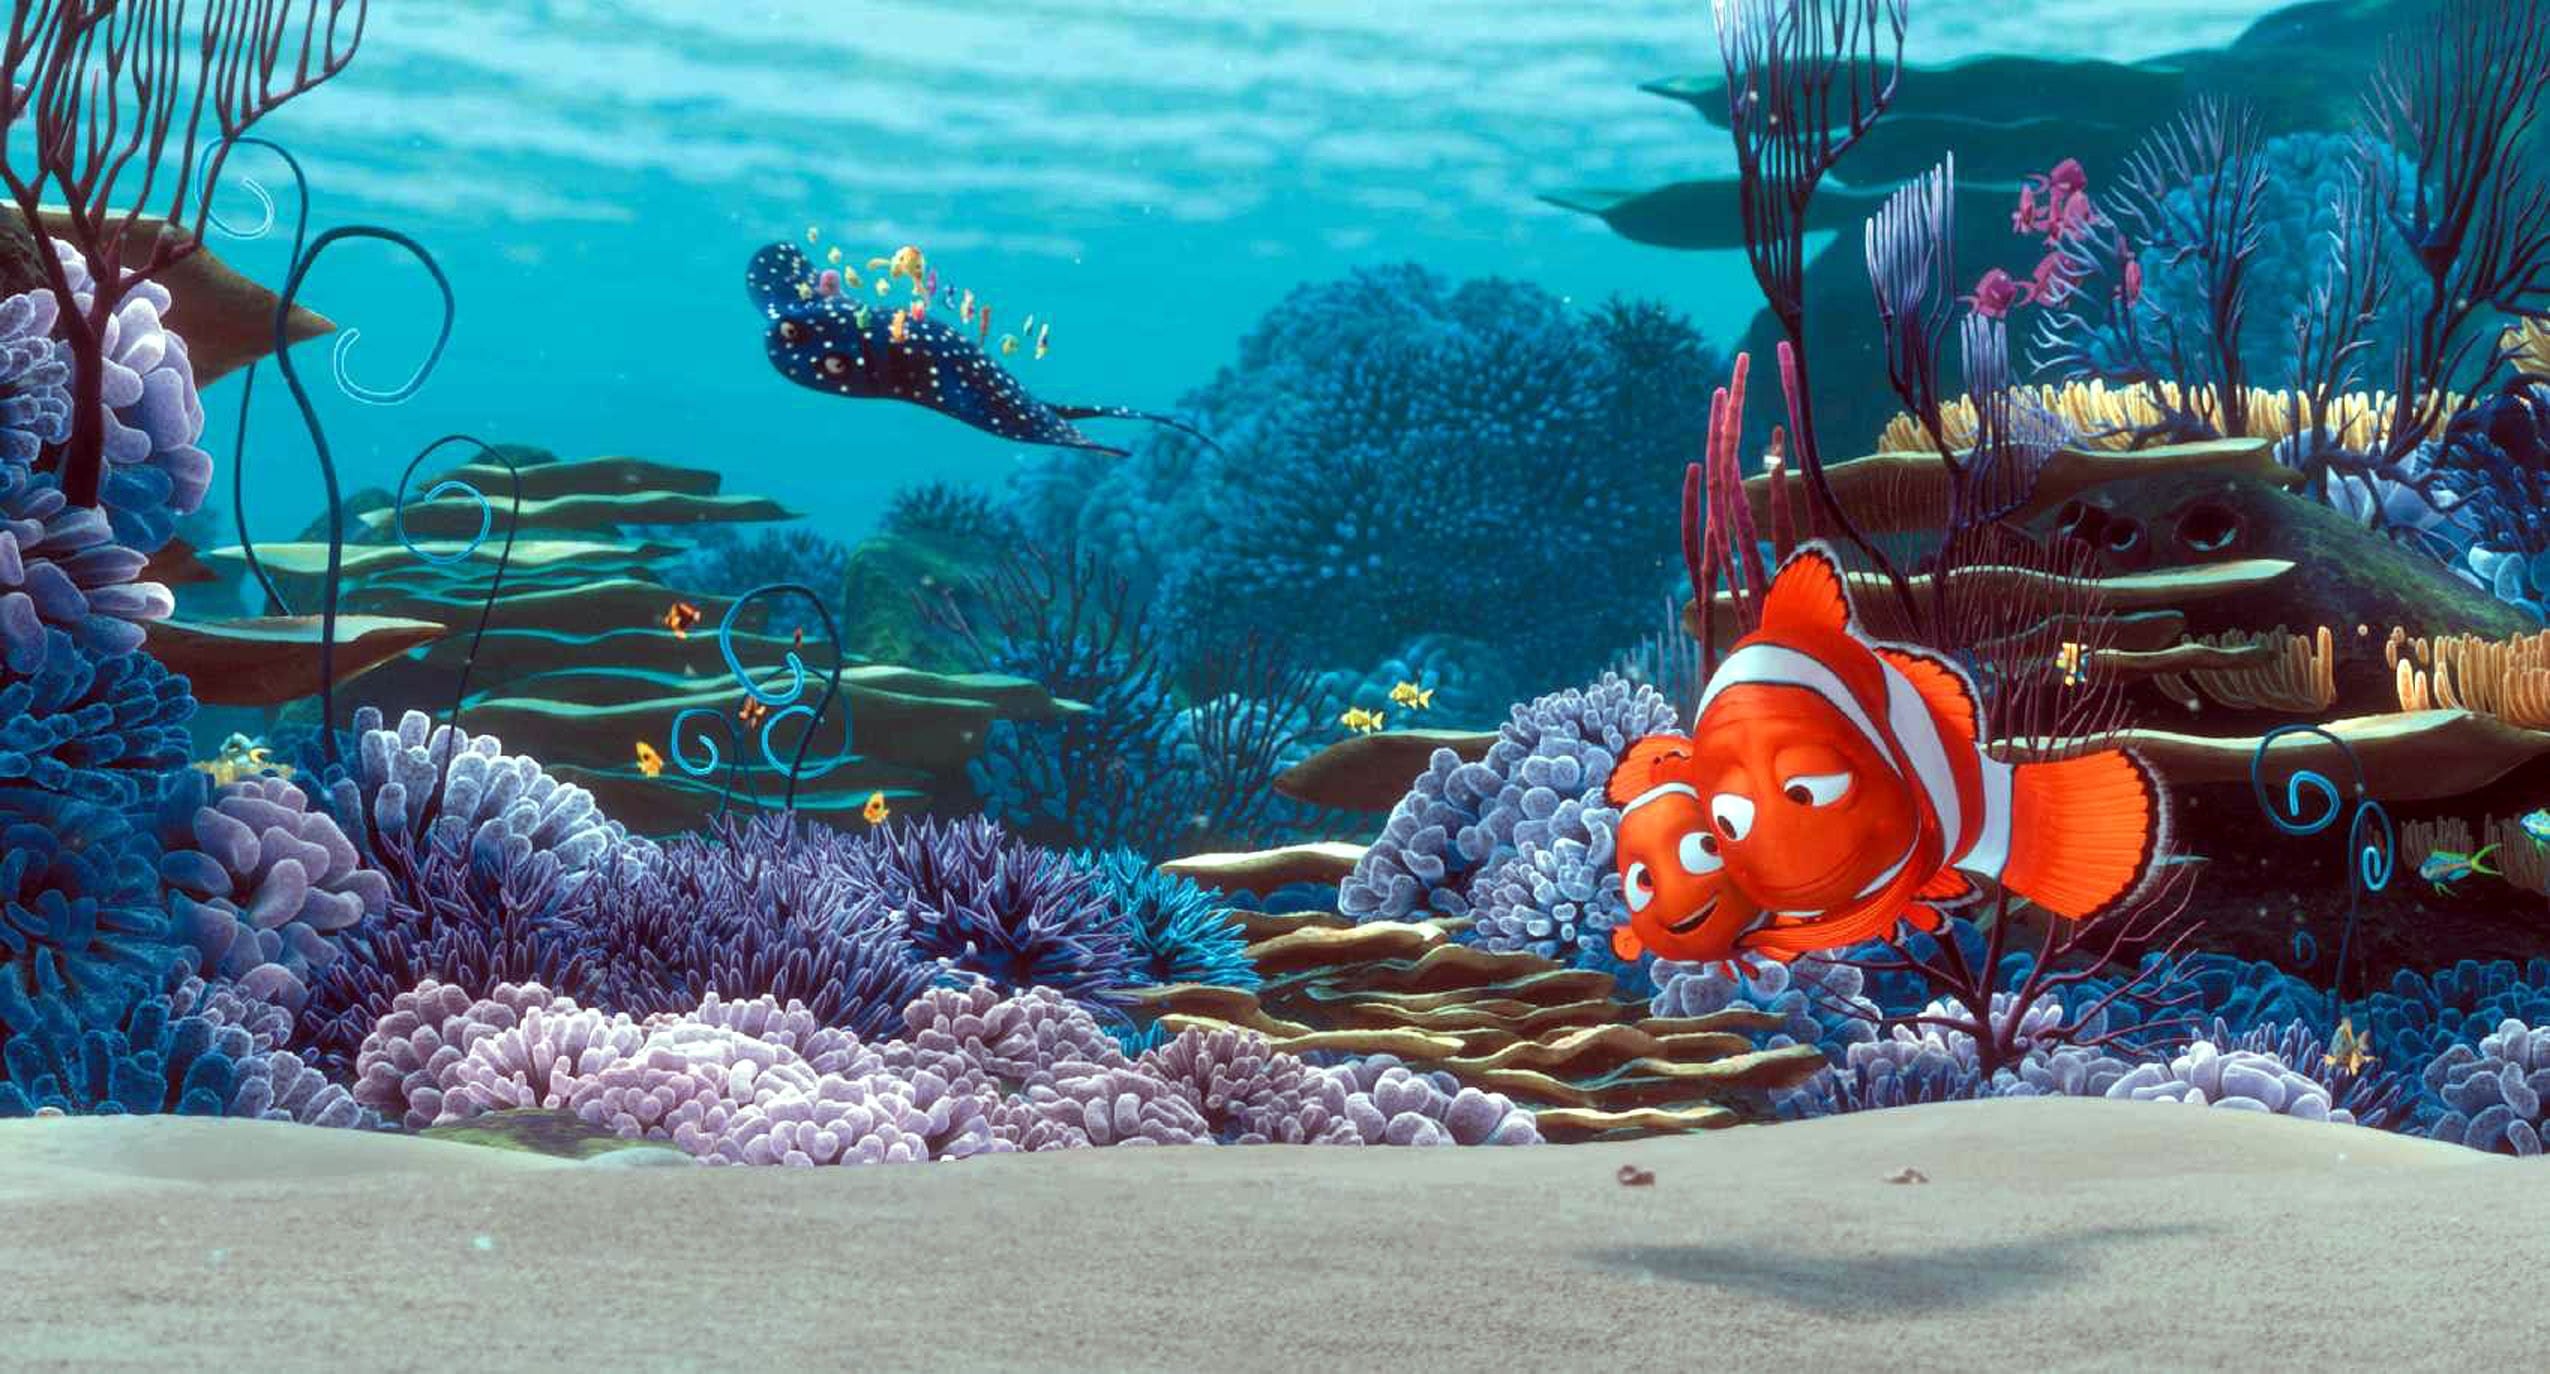 Crítica de cine: Buscando a Nemo